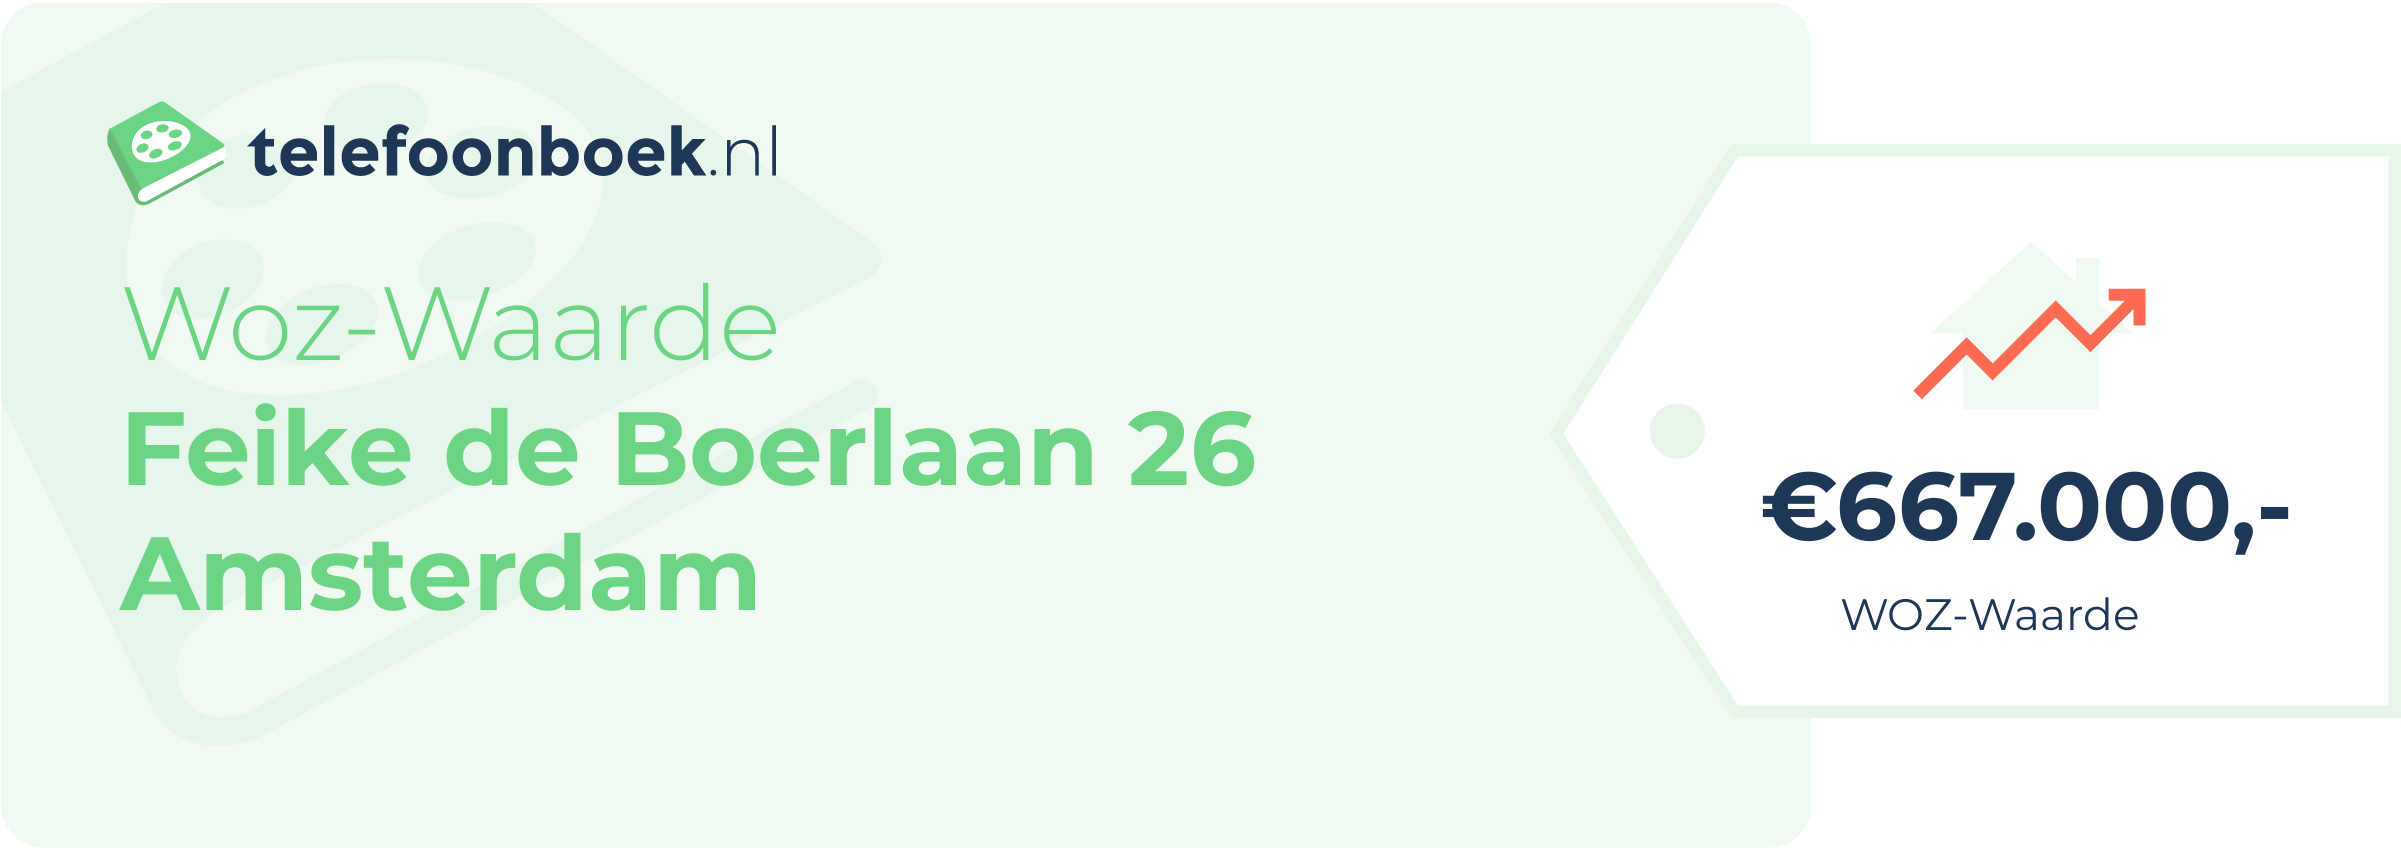 WOZ-waarde Feike De Boerlaan 26 Amsterdam